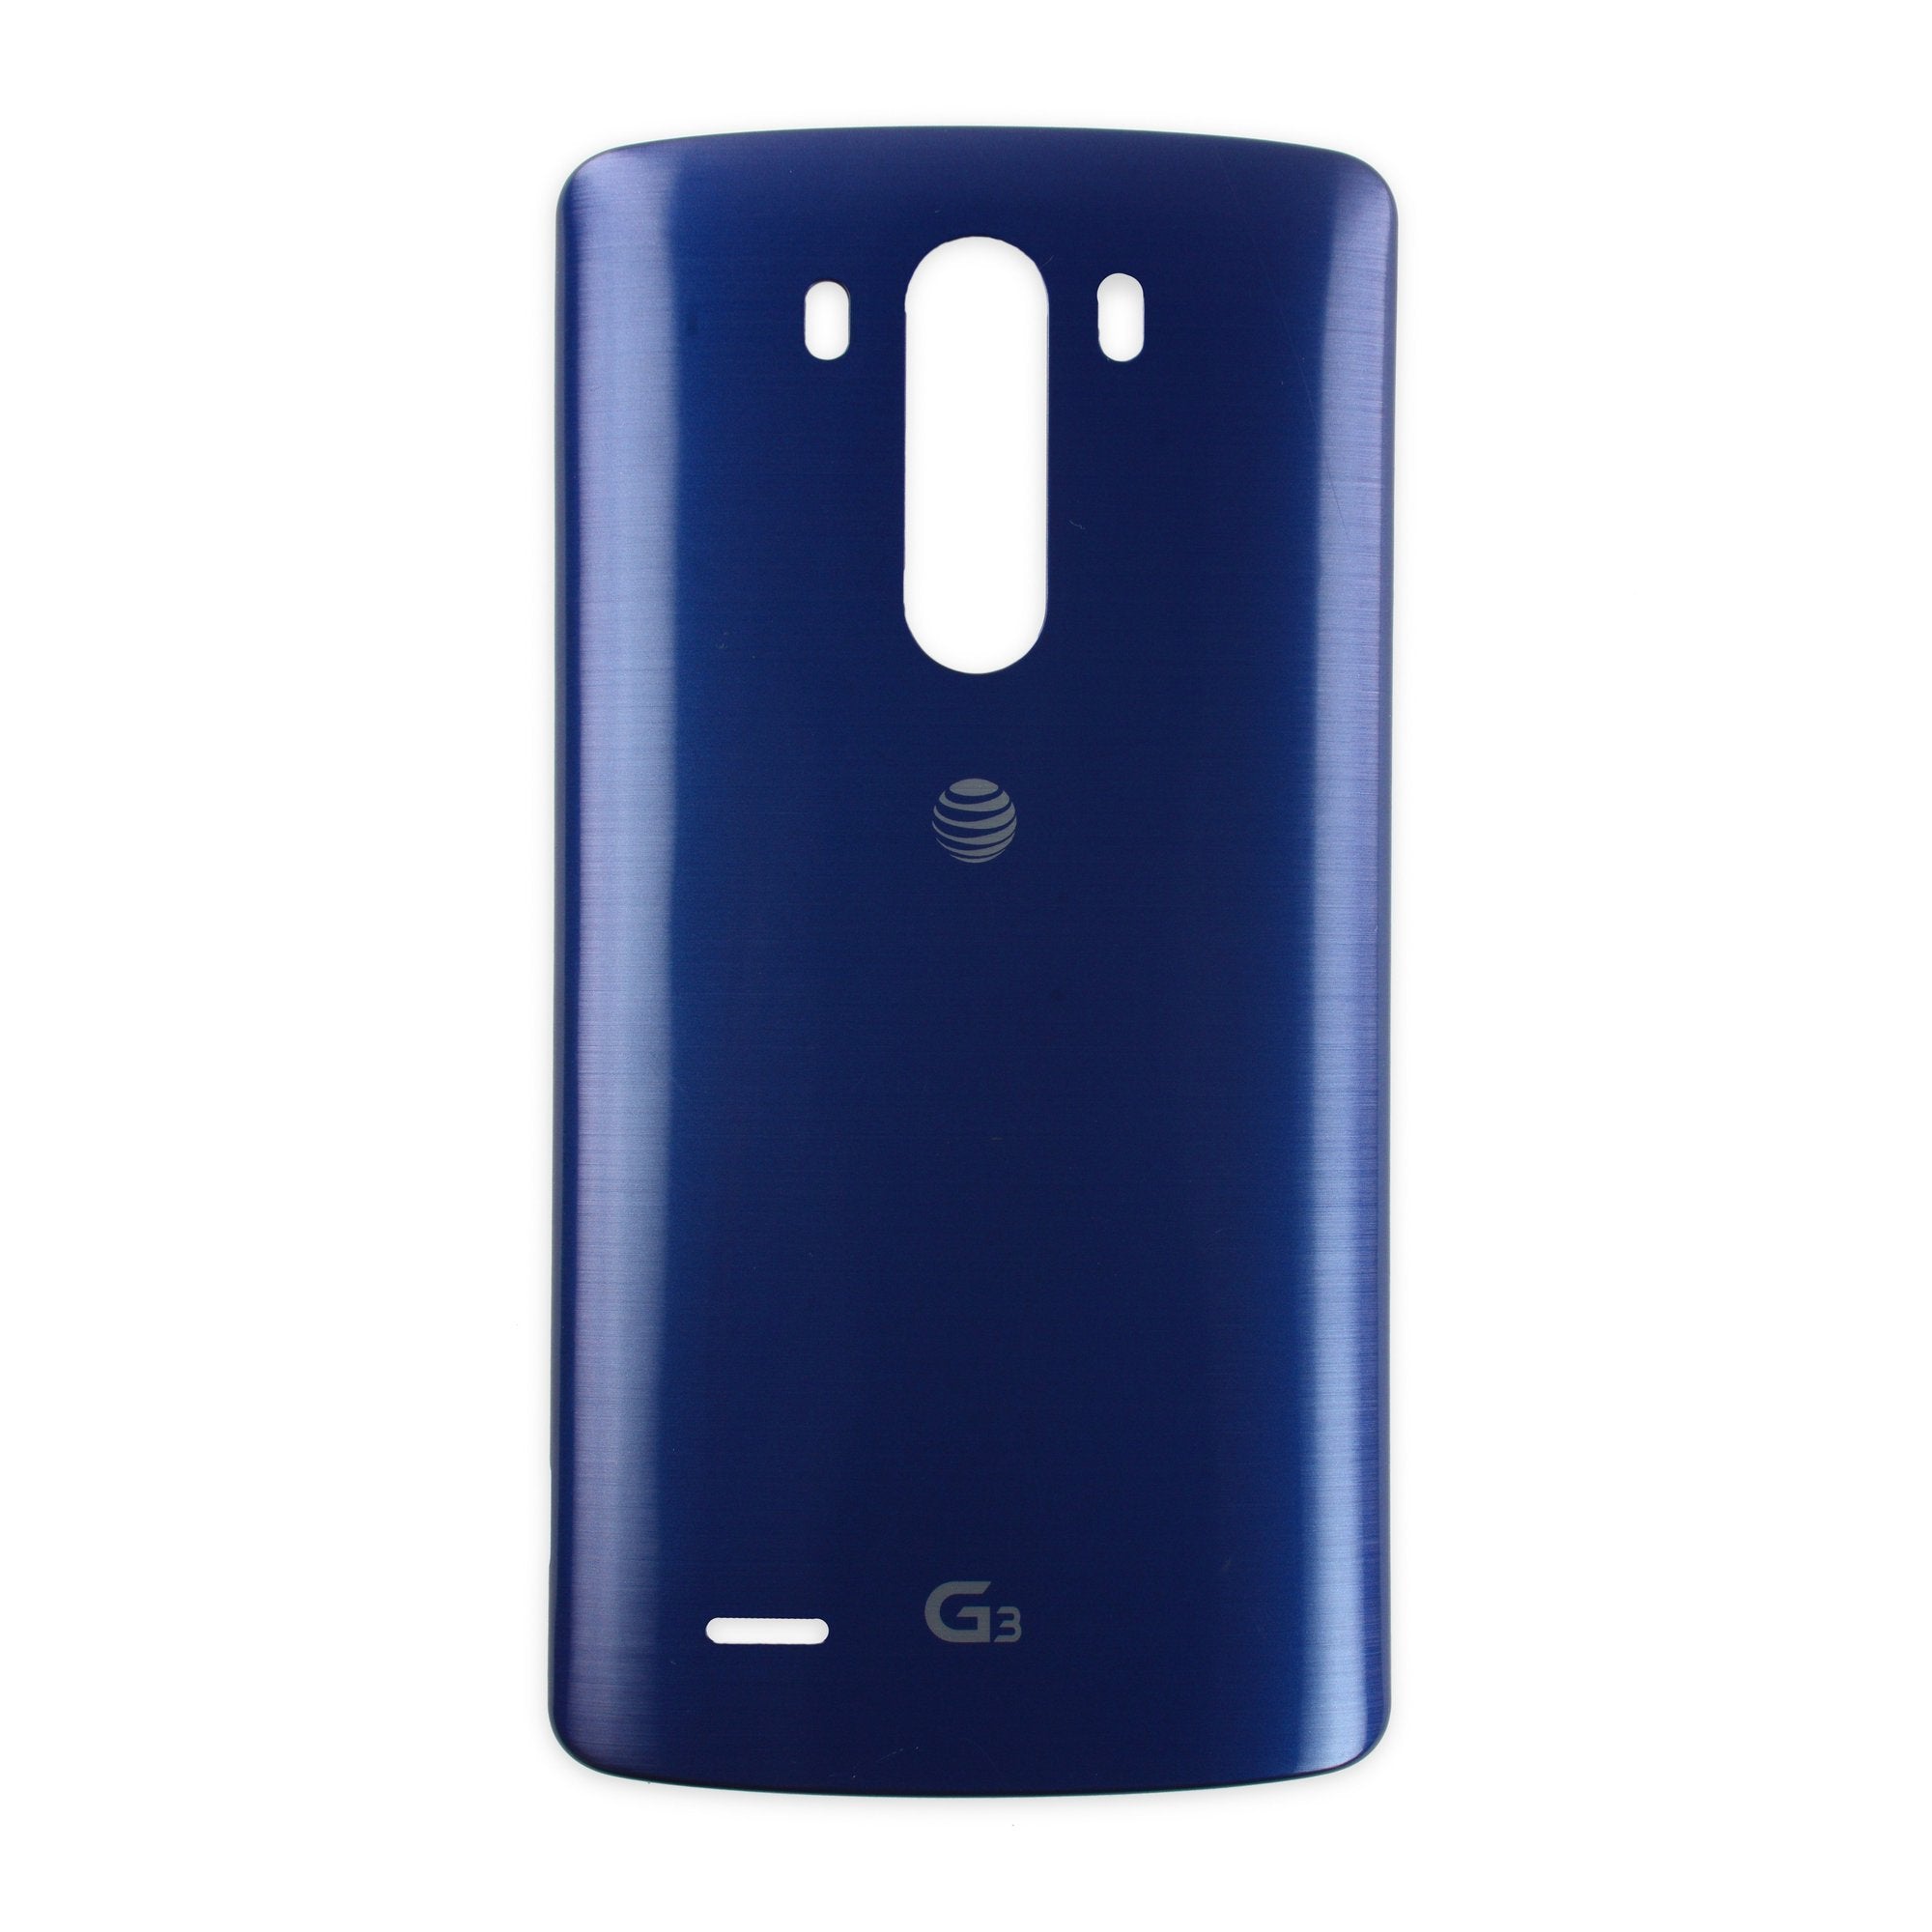 LG G3 Rear Panel (AT&T)